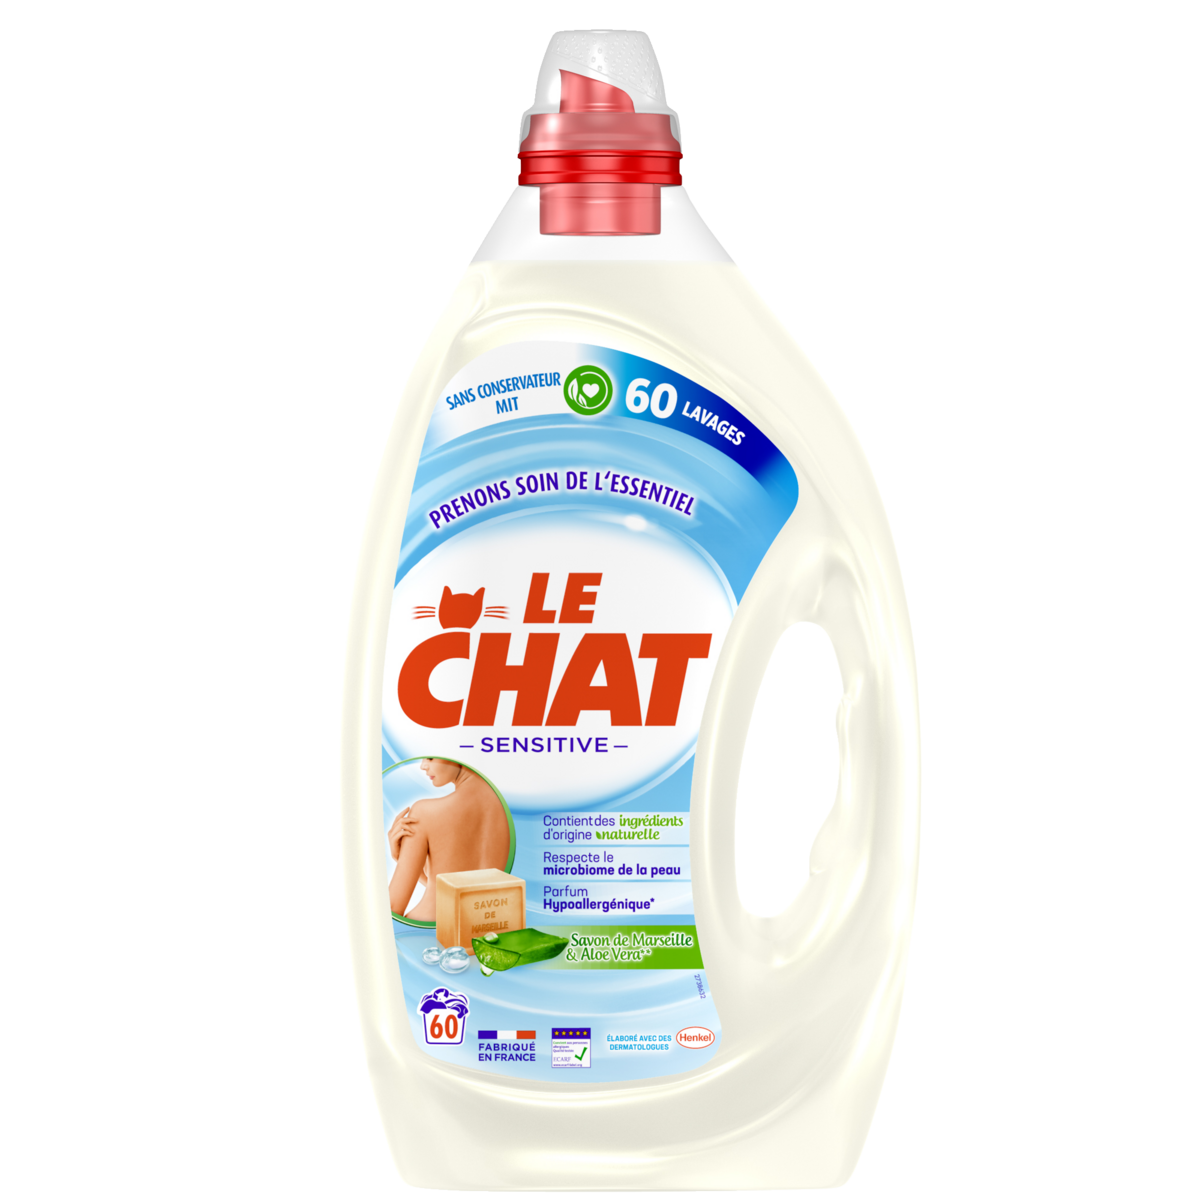 Le Chat Lessive liquide sensitive au savon de Marseille & Aloé vera